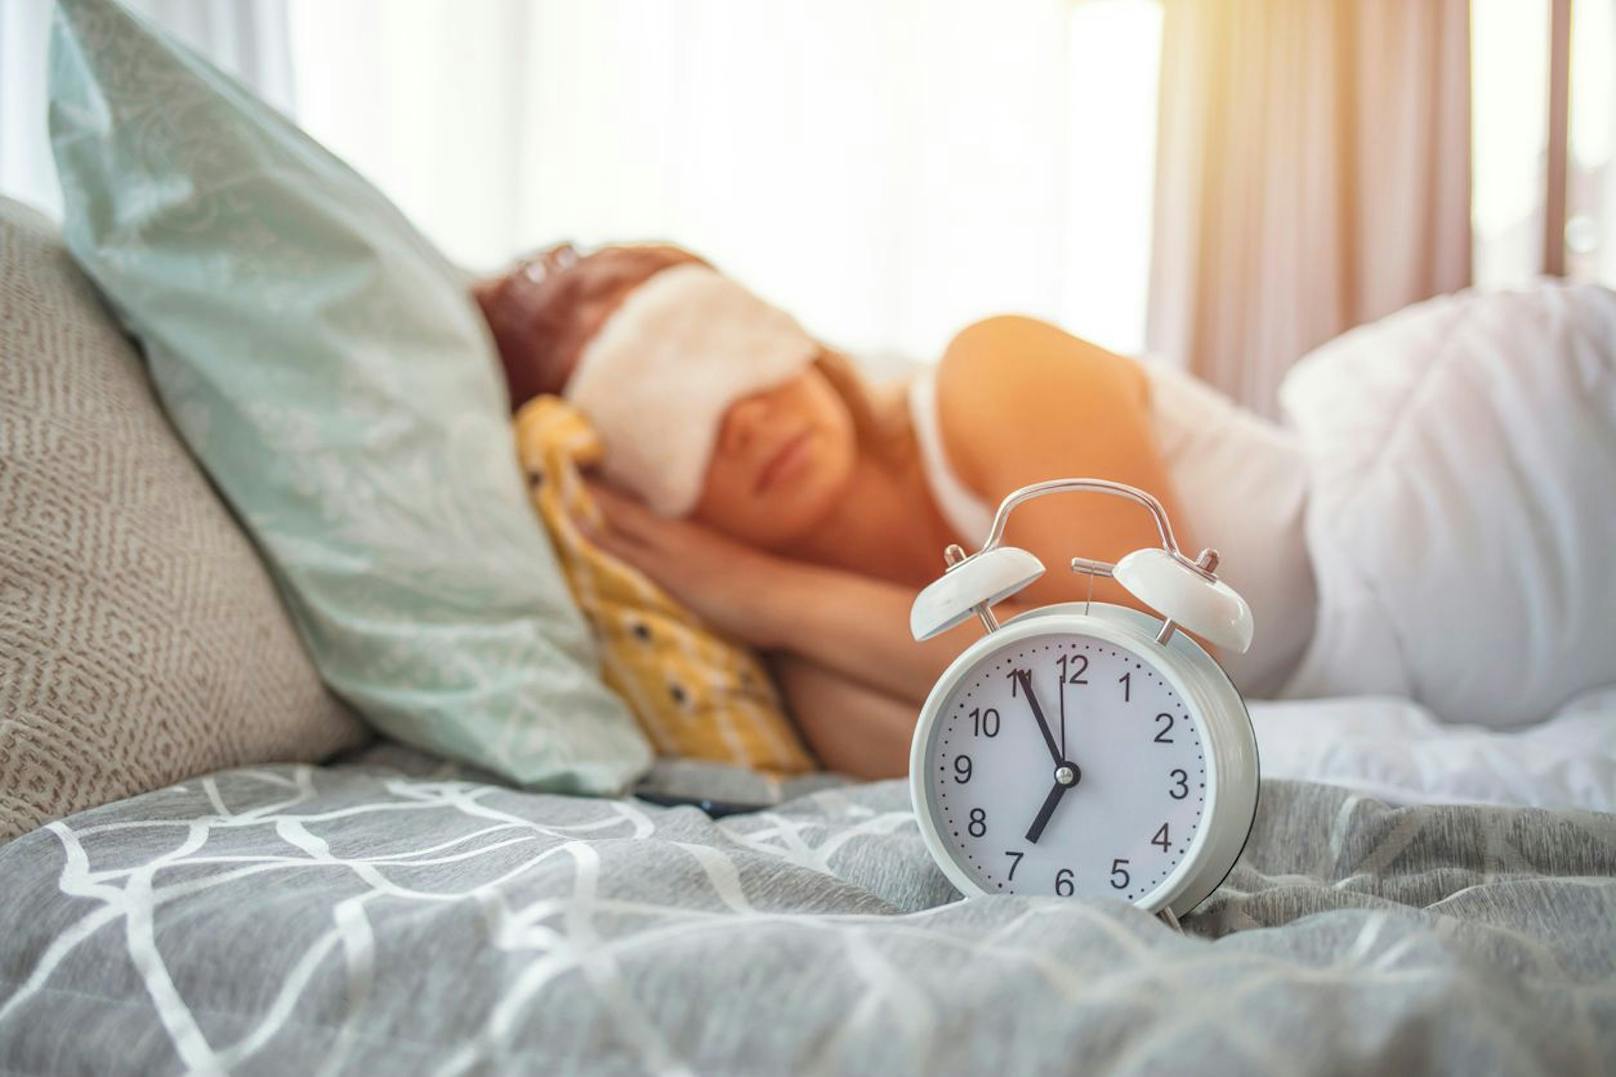 Eine Aktivität die sich bestimmt nicht als Herausforderung erweisen wird wäre genug Schlaf und Bettruhe zu bekommen. Ein guter Schlaf wirkt sich positiv auf deine Fitnessleistung aus. Schaue also darauf, dass du nachts mindestens acht Stunden schläfst.